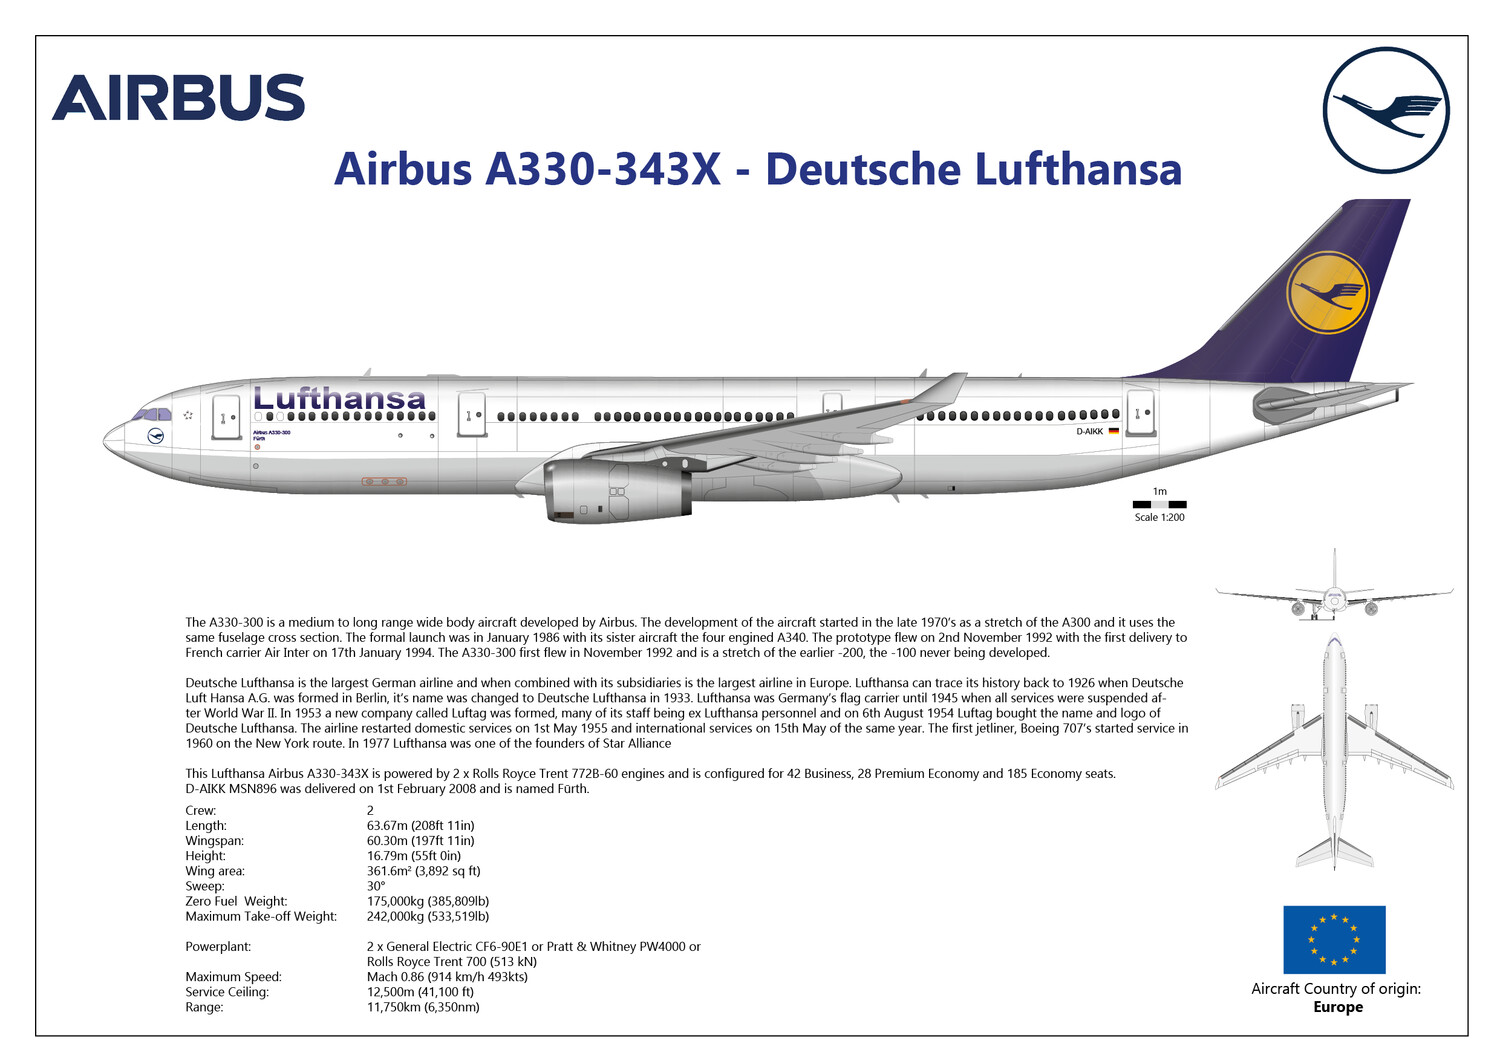 Airbus A330-343X Lufthansa